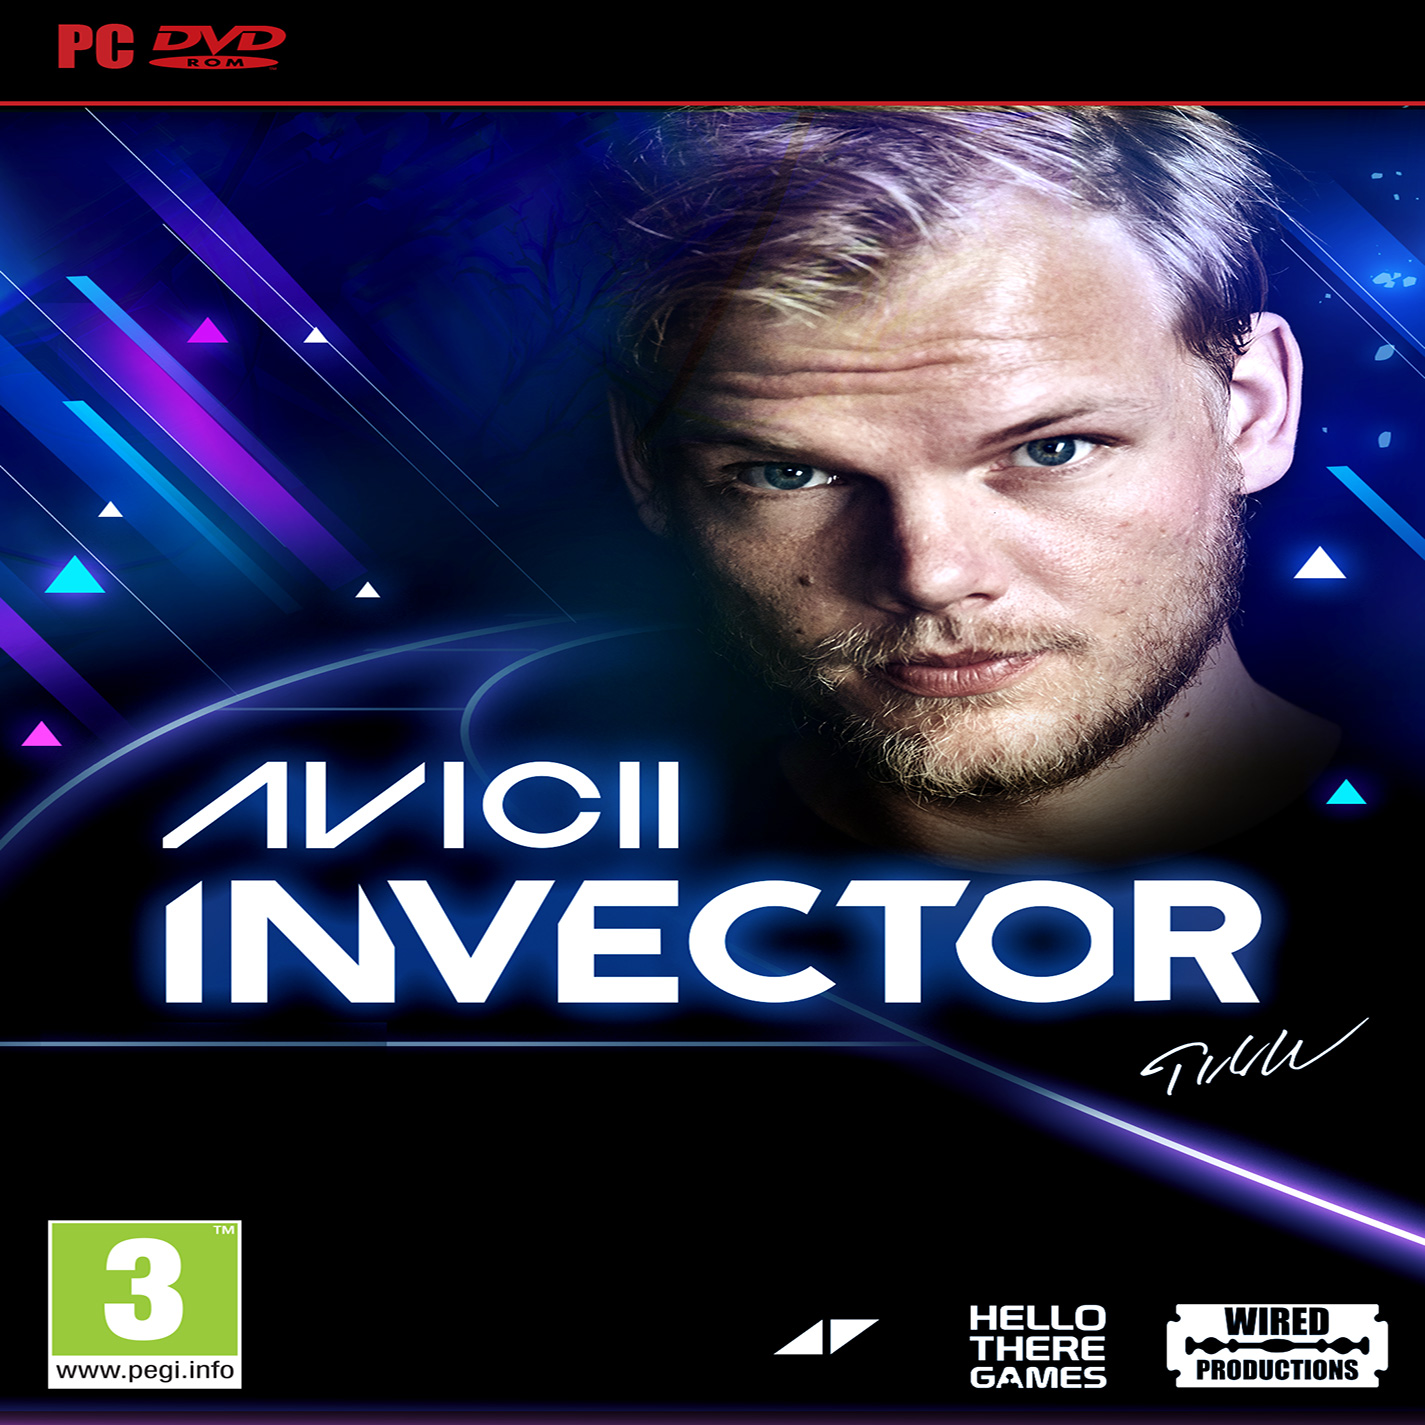 AVICII Invector - predn CD obal